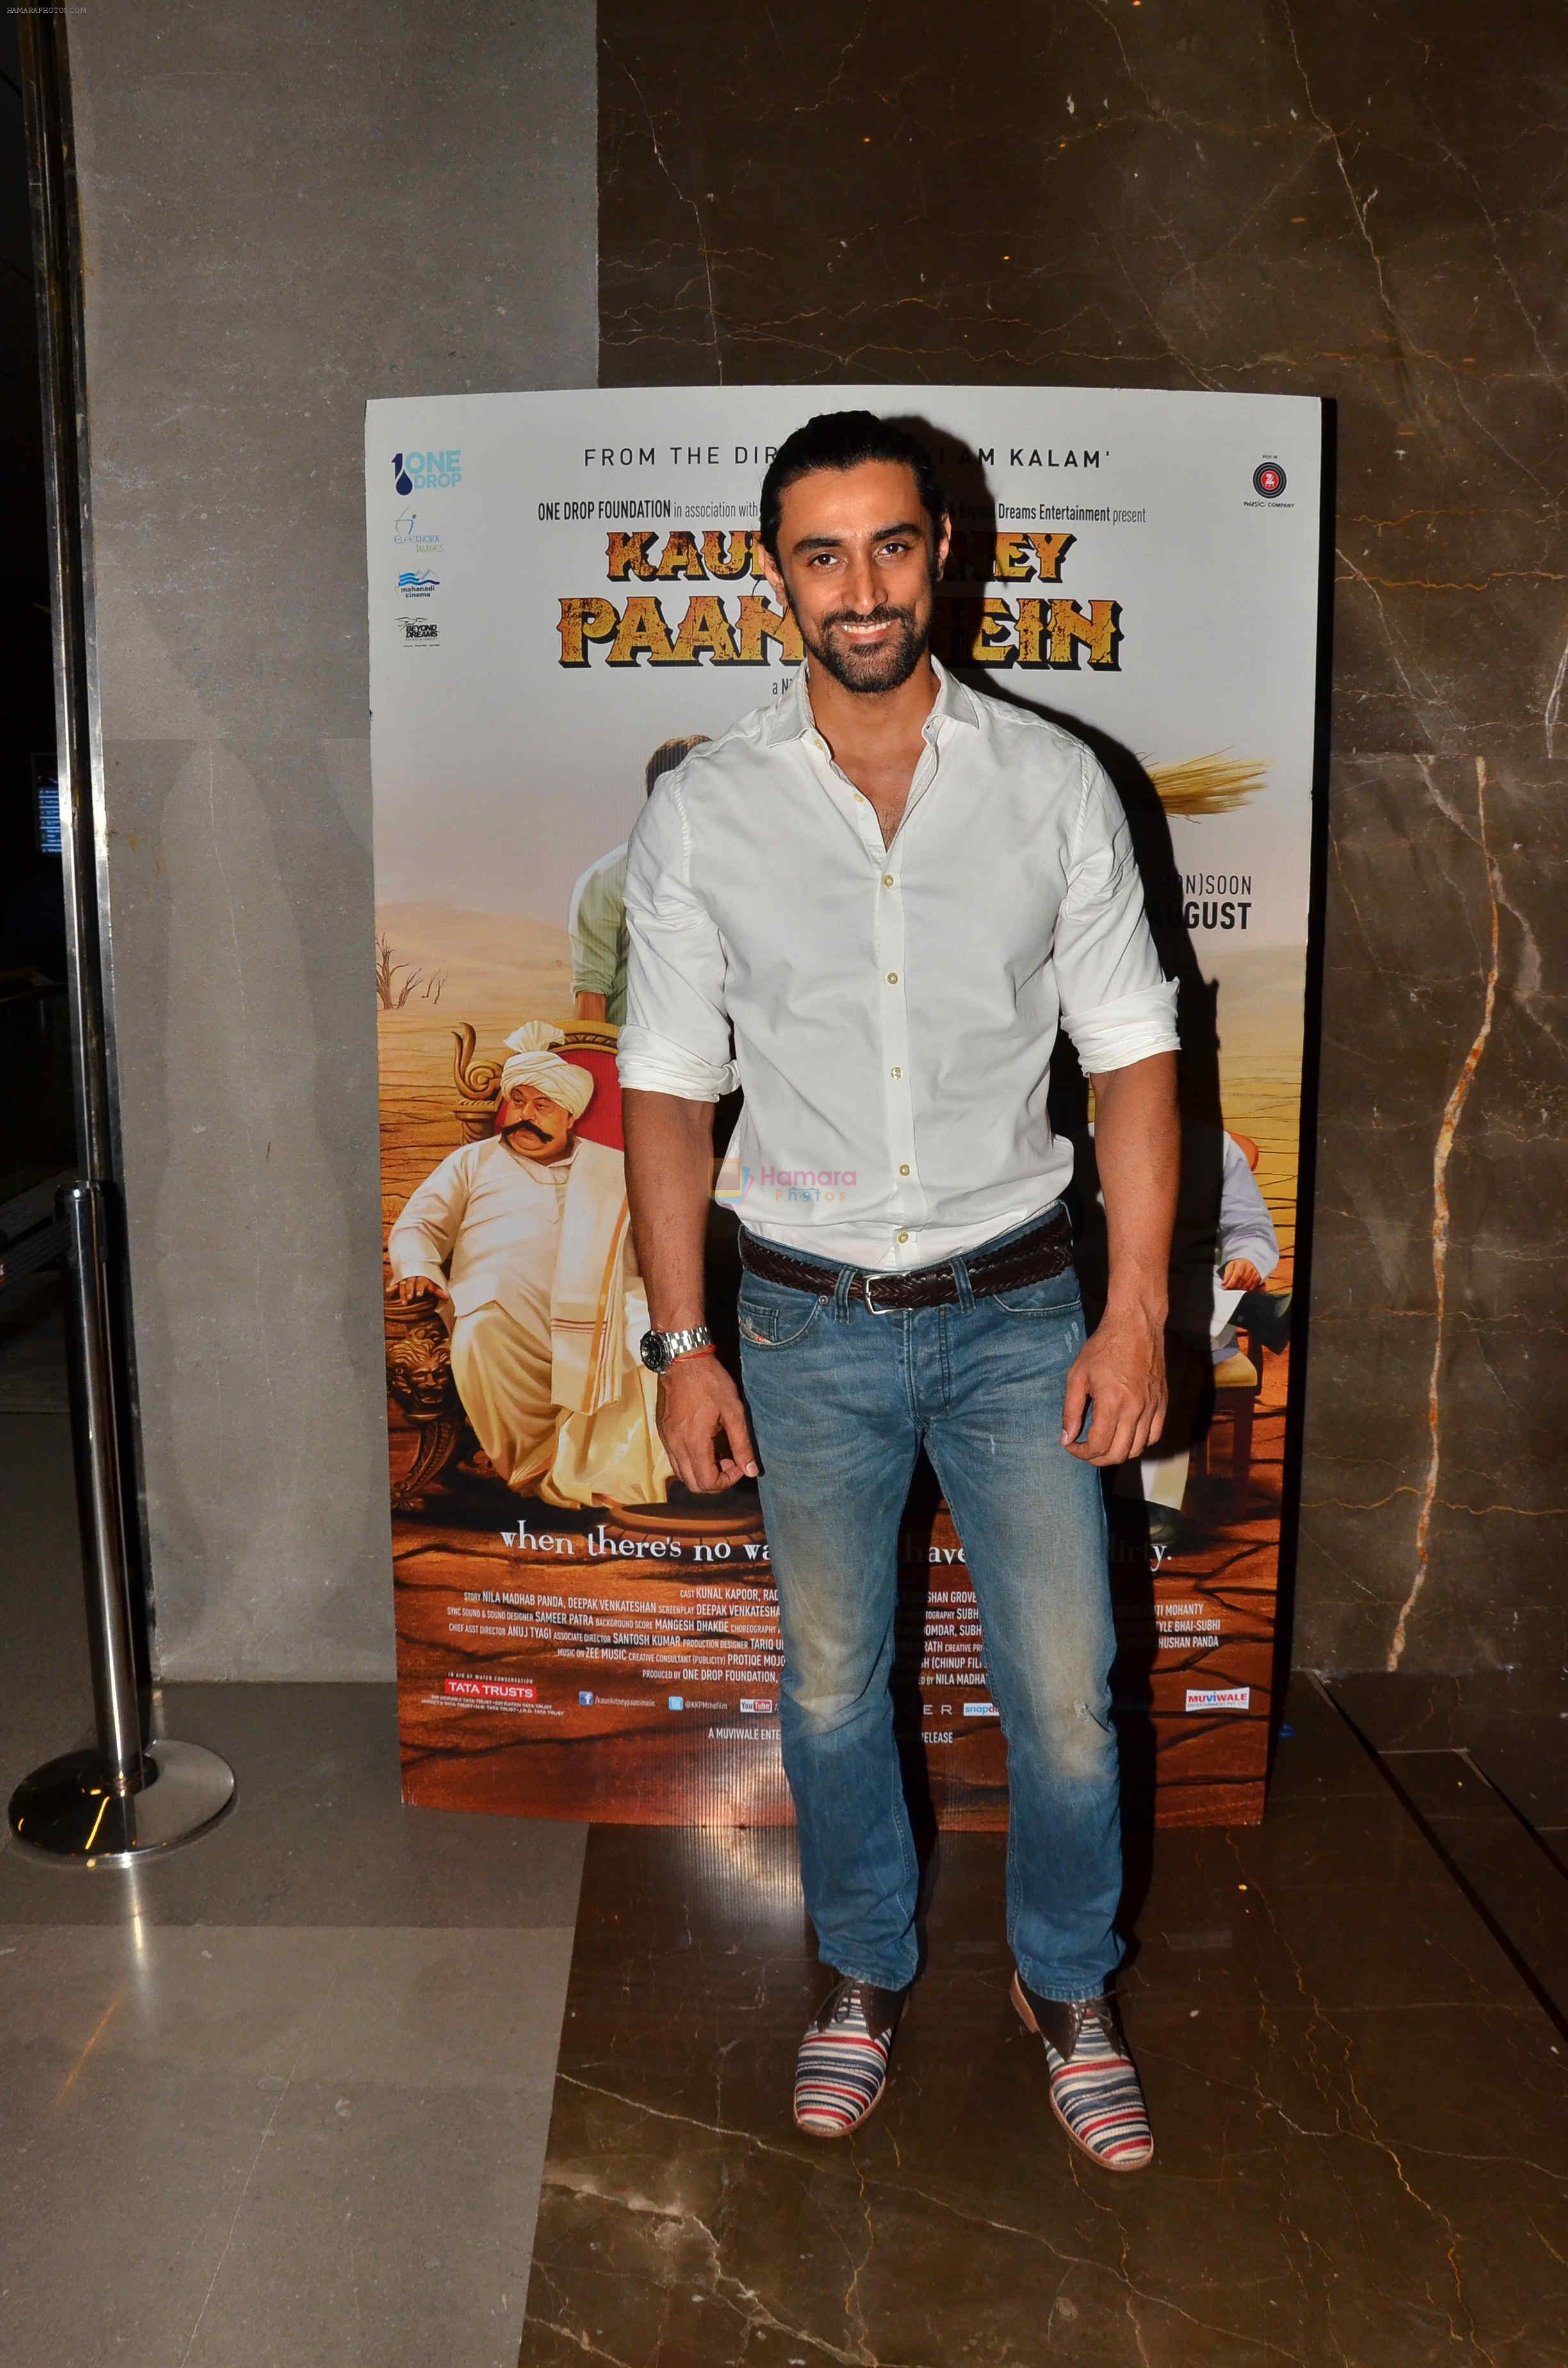 Kunal Kapoor at Kaun Kitney Paani Mein screening in Mumbai on 28th Aug 2015